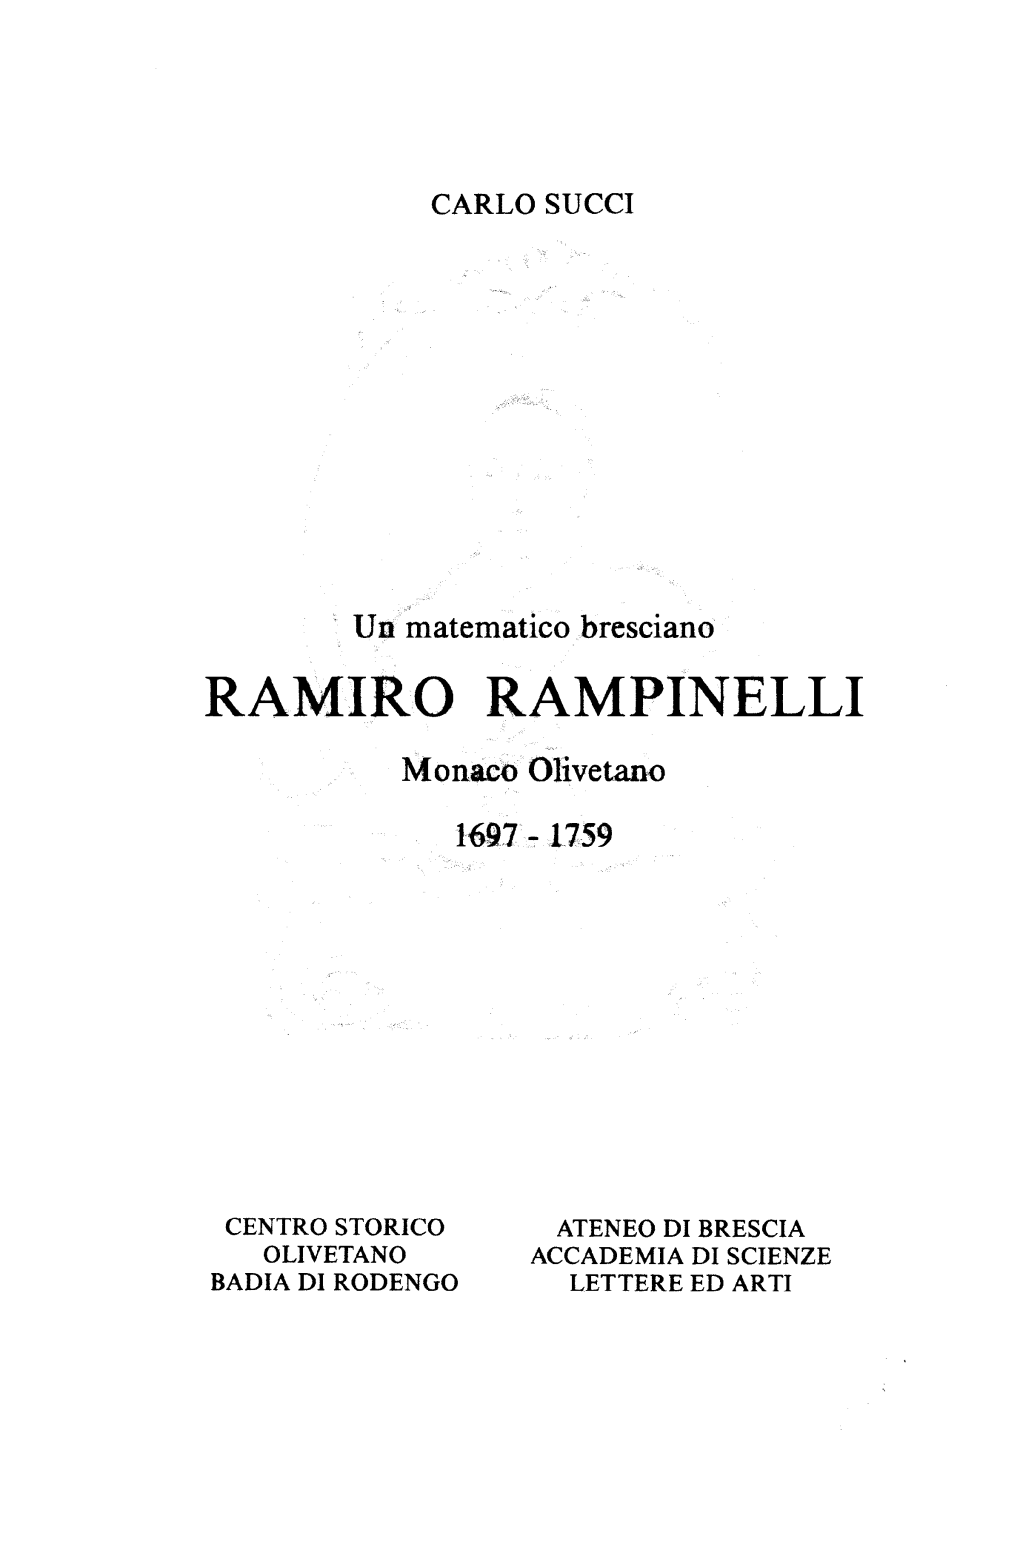 Ramiro Rampinelli